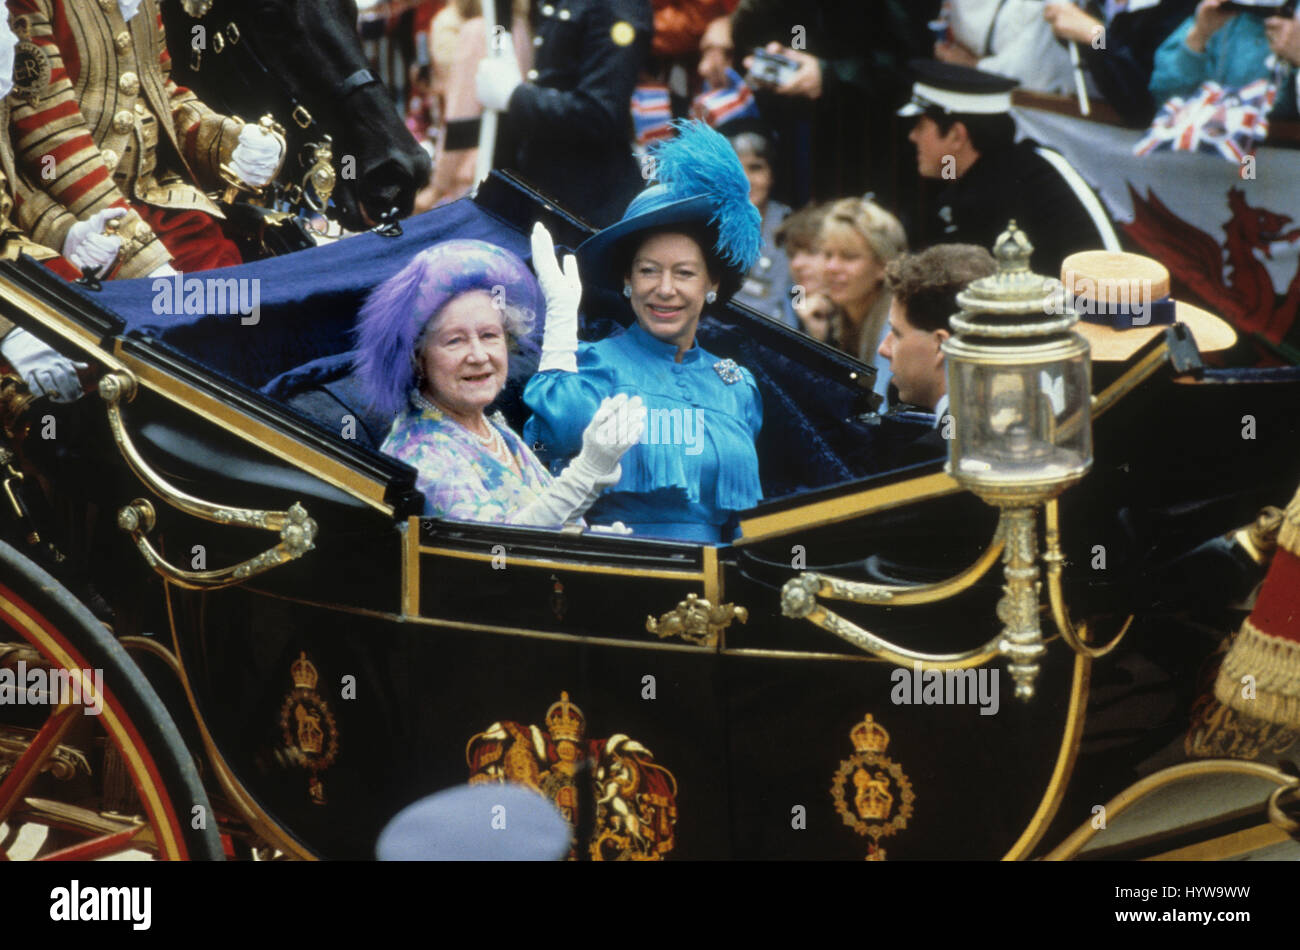 Mariage du Prince Andrew et Sarah Ferguson Juillet 1986. La princesse Margaret et la reine mère arrivent dans leur transport. Banque D'Images